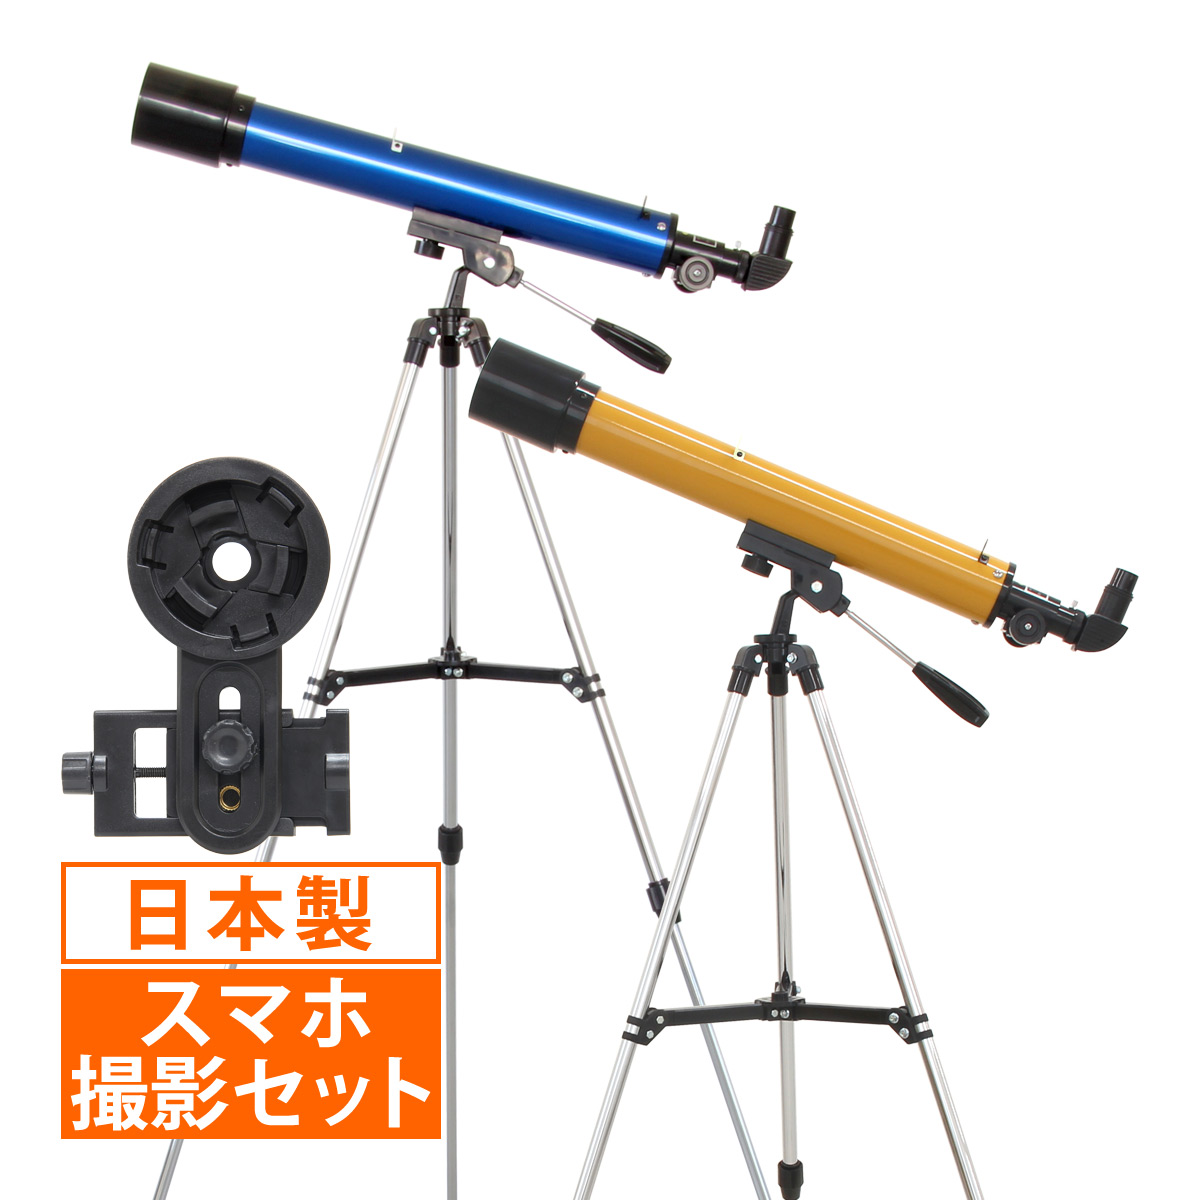 望遠鏡 子供 初心者 セット 屈折式 天体望遠鏡 TM-40 小学生 おもちゃ:ルーペスタジオ